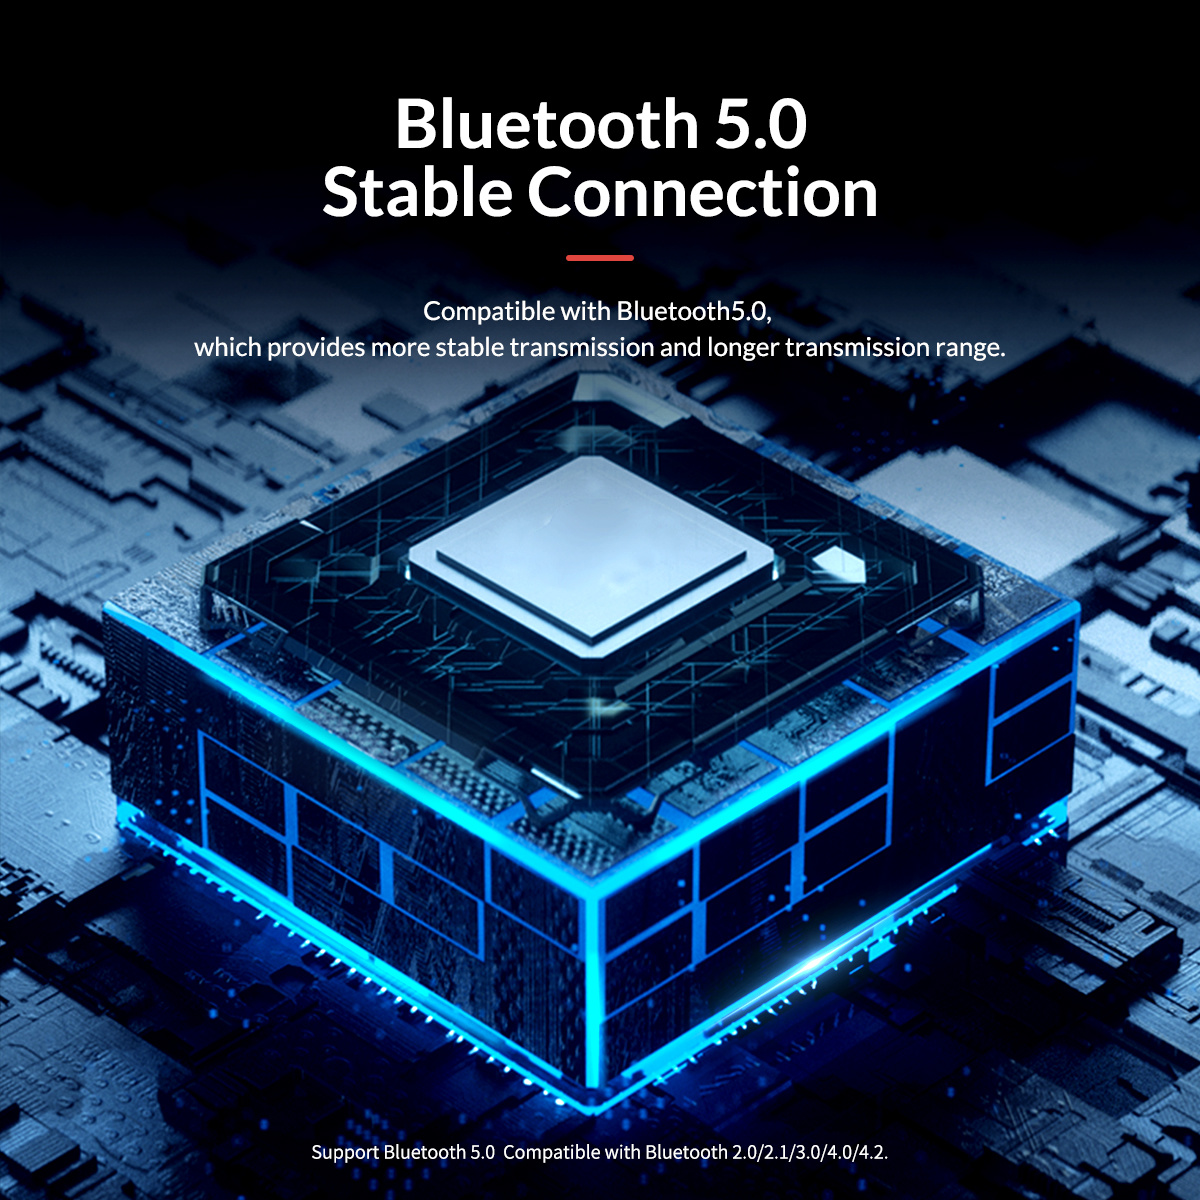 Adaptateur Bluetooth 5.0 pour Switch, PC, PS4, PS4 Pro - Orico